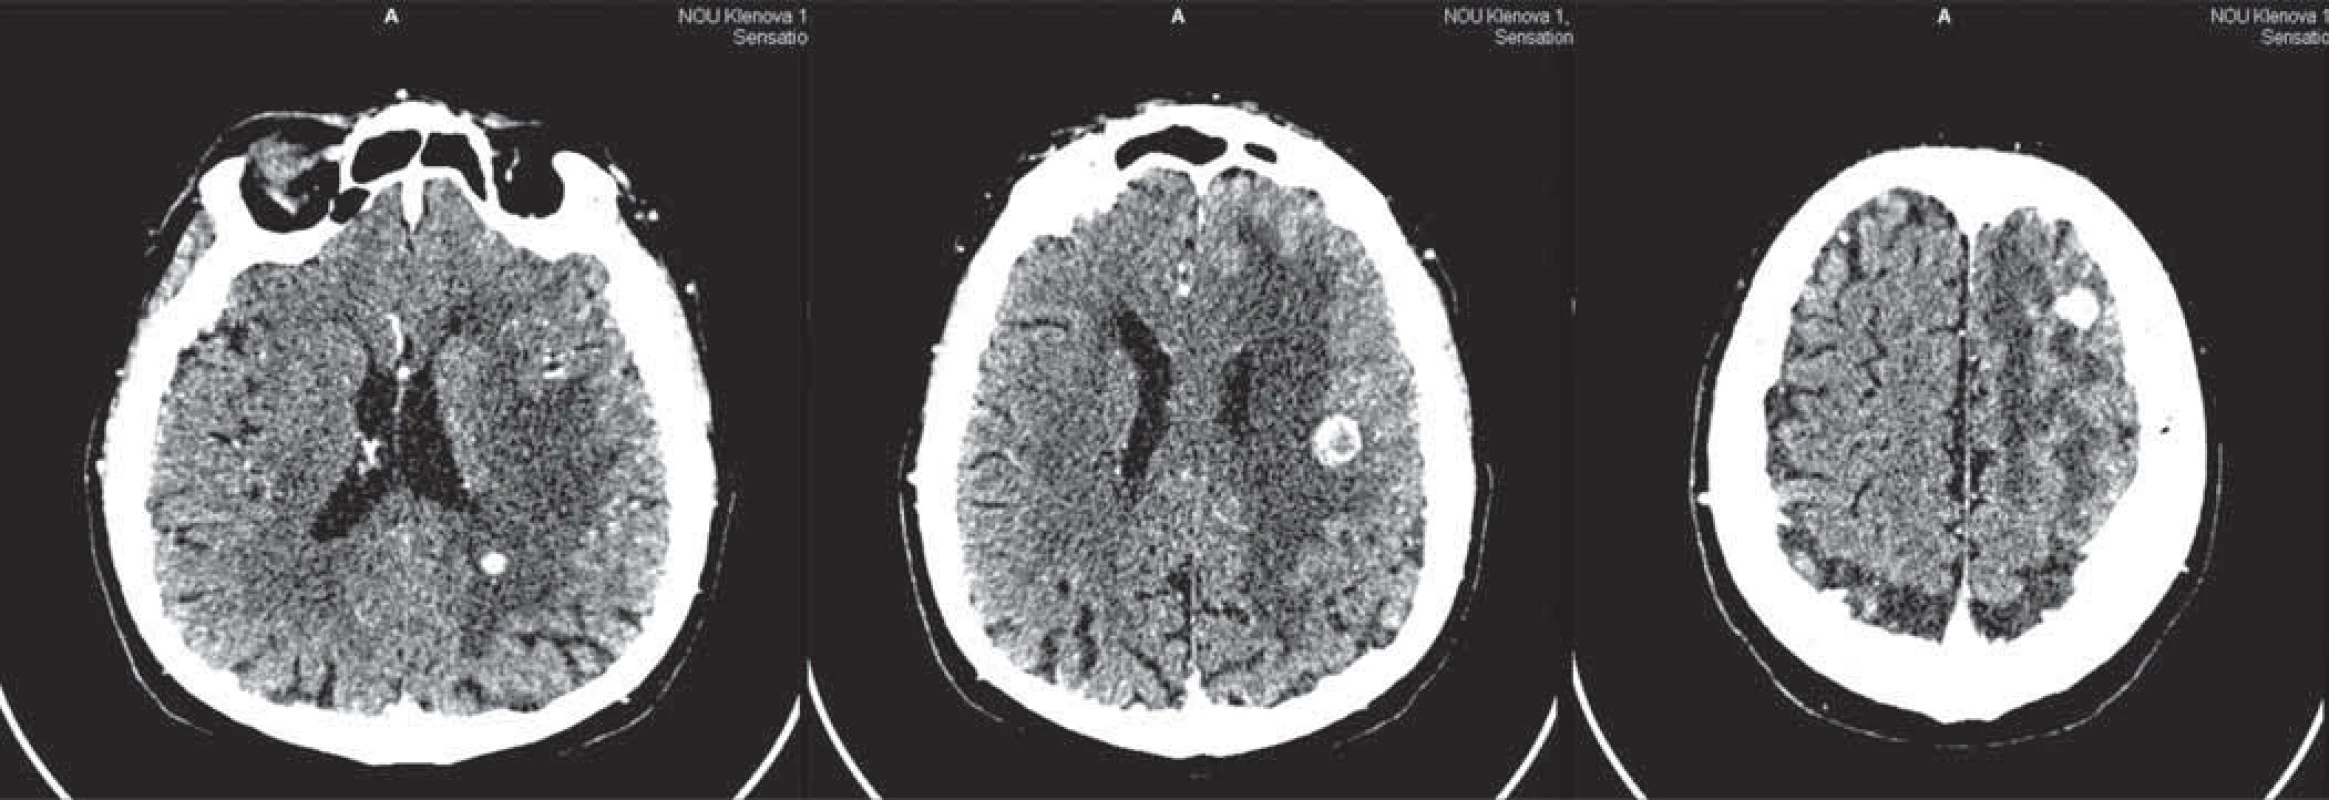 CT vyšetrenie mozgu 12. 7. 2009.